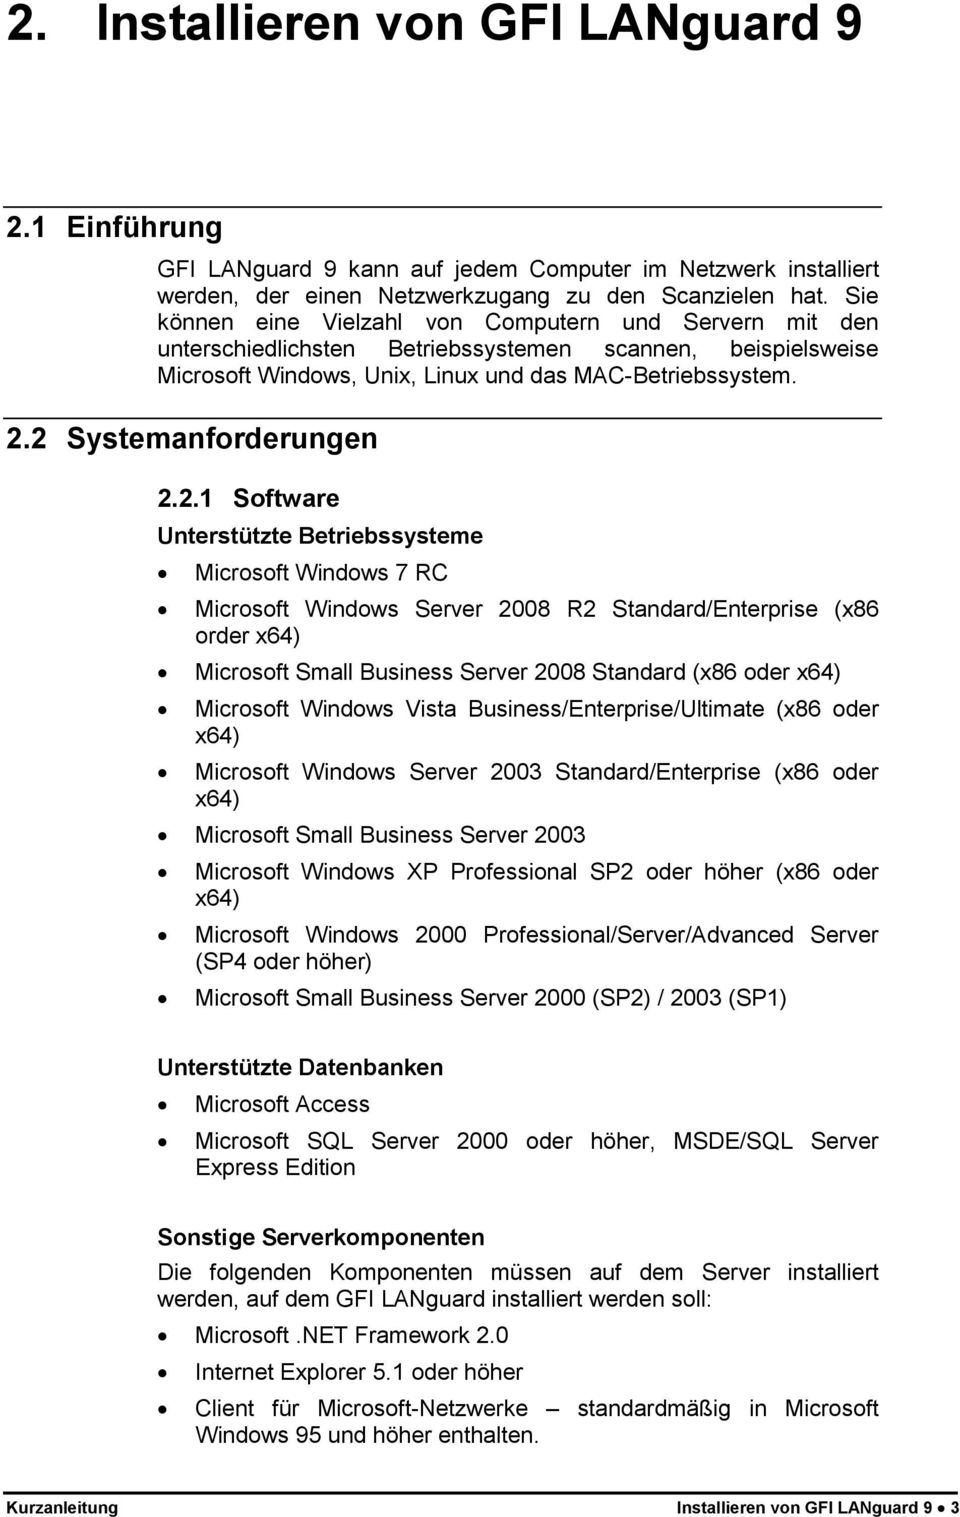 2 Systemanforderungen 2.2.1 Software Unterstützte Betriebssysteme Microsoft Windows 7 RC Microsoft Windows Server 2008 R2 Standard/Enterprise (x86 order x64) Microsoft Small Business Server 2008